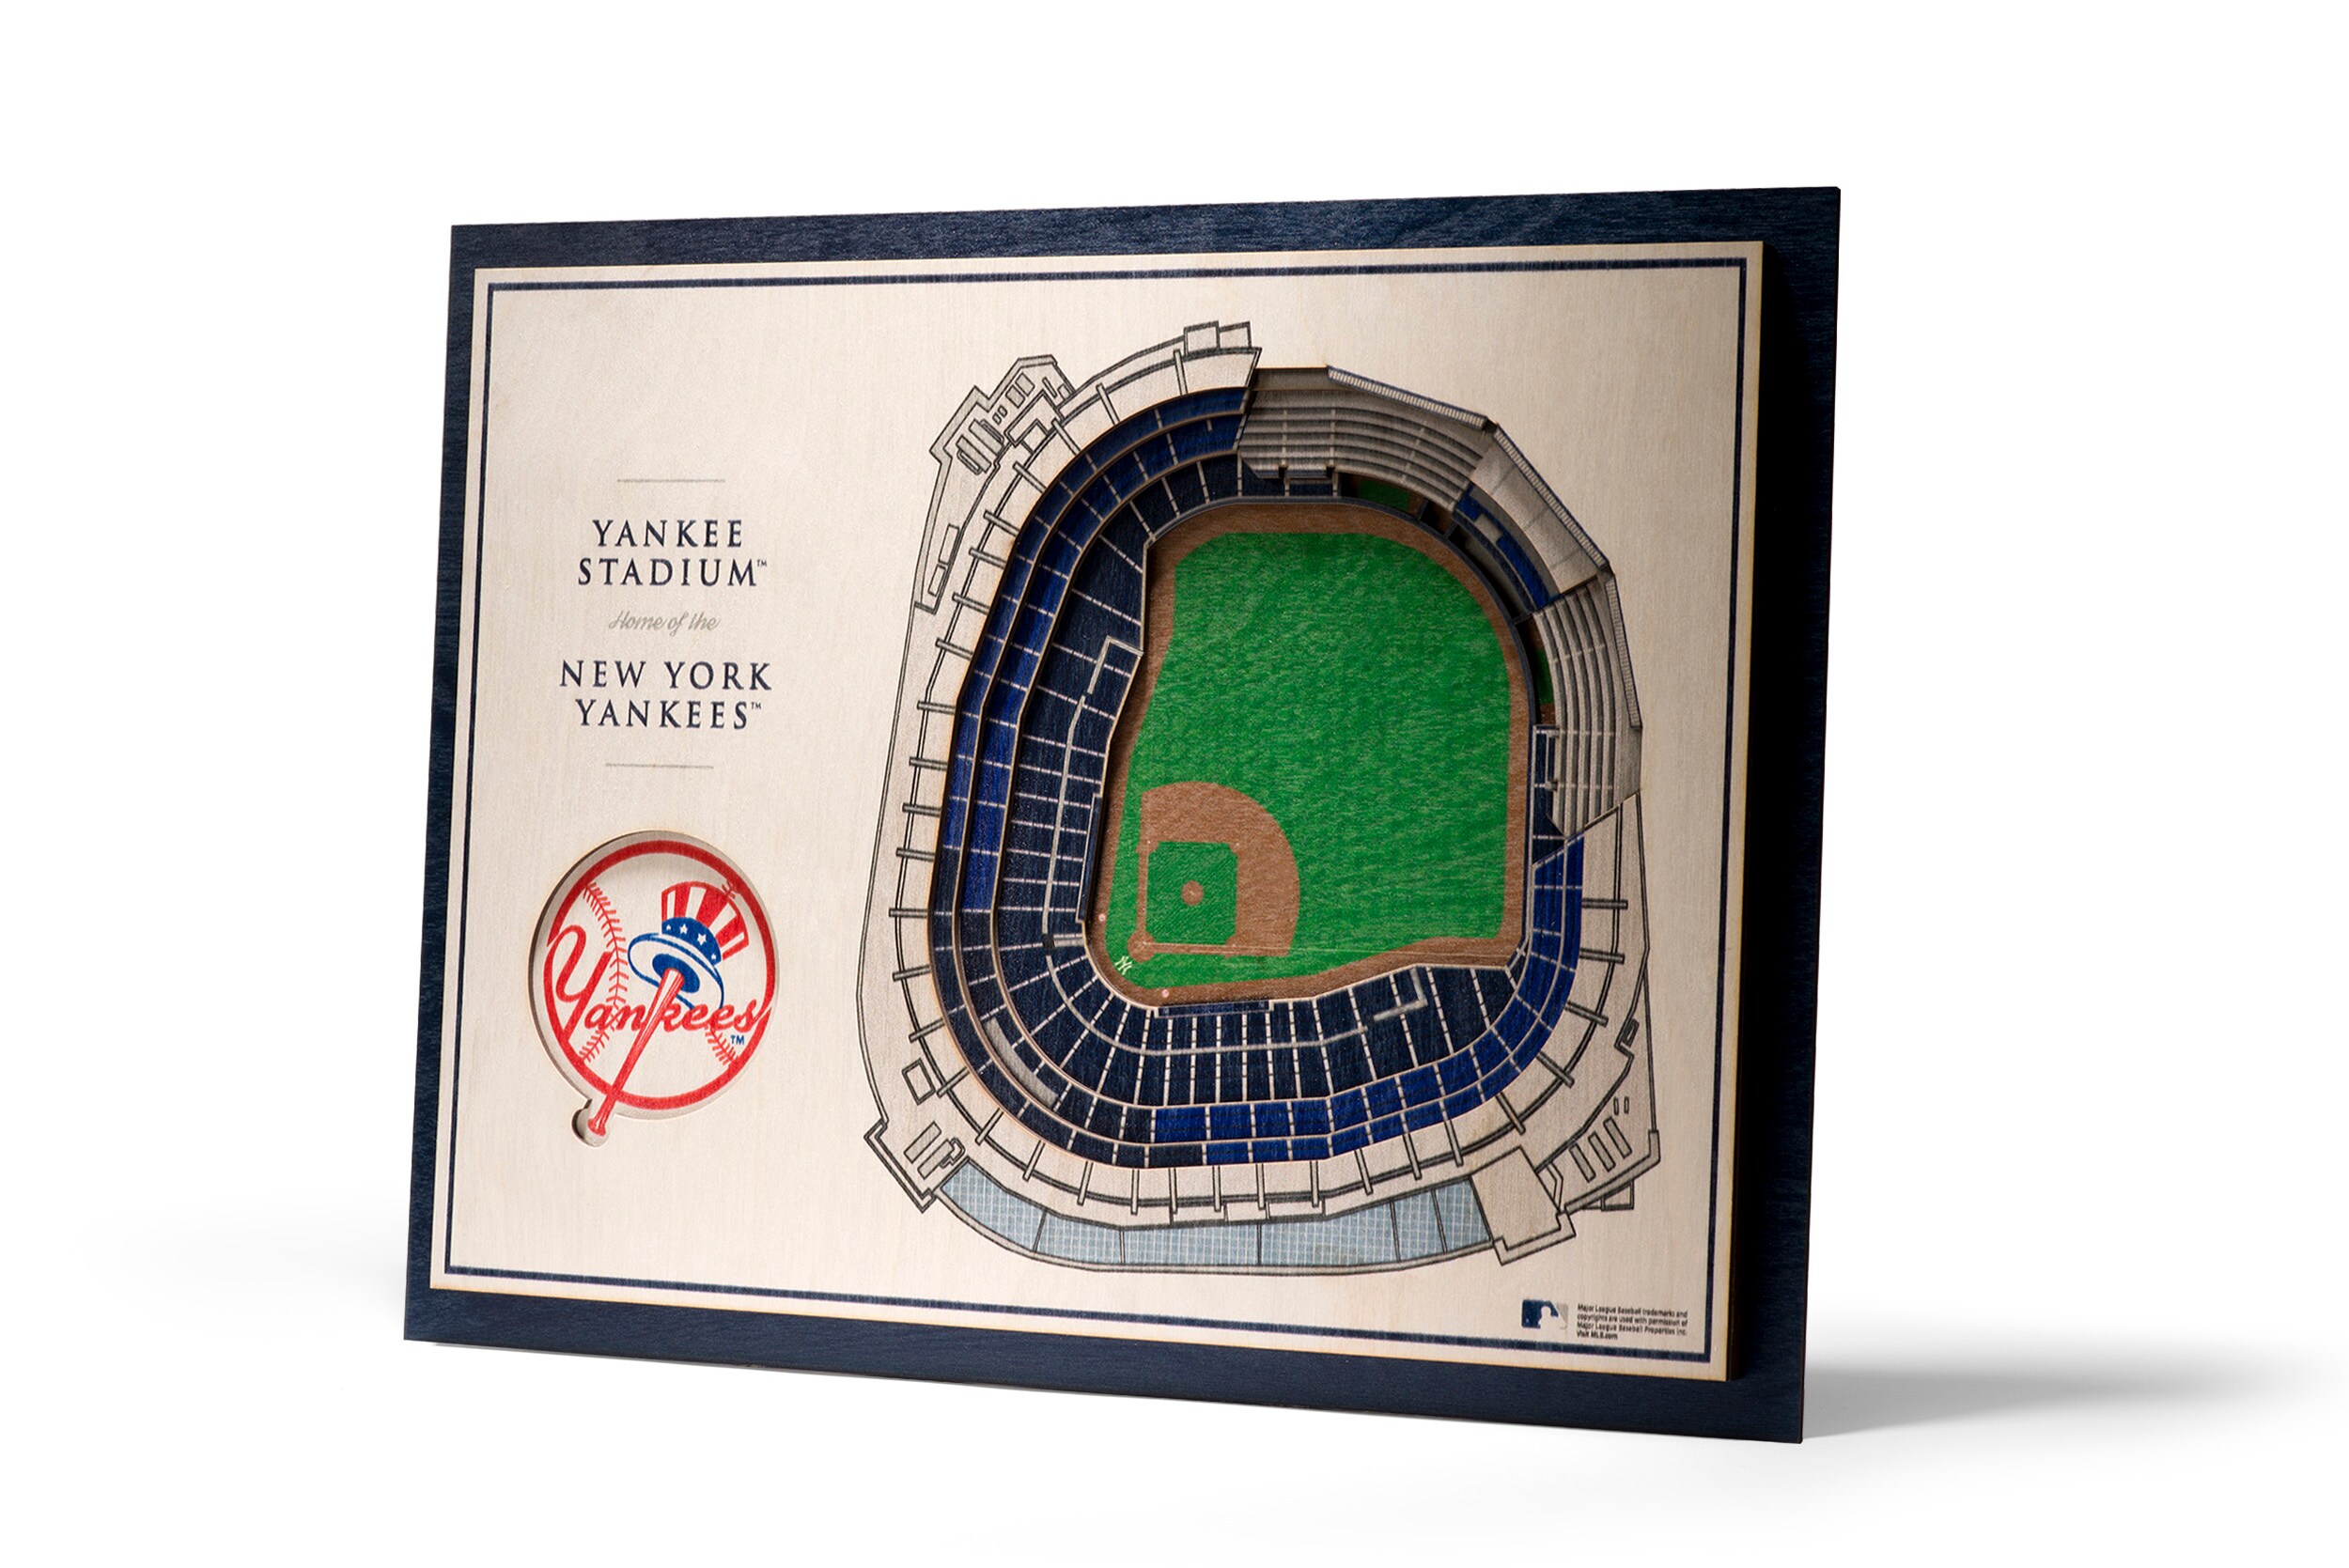 MLB New York Yankees Baseball Logo Glass Framed Panel